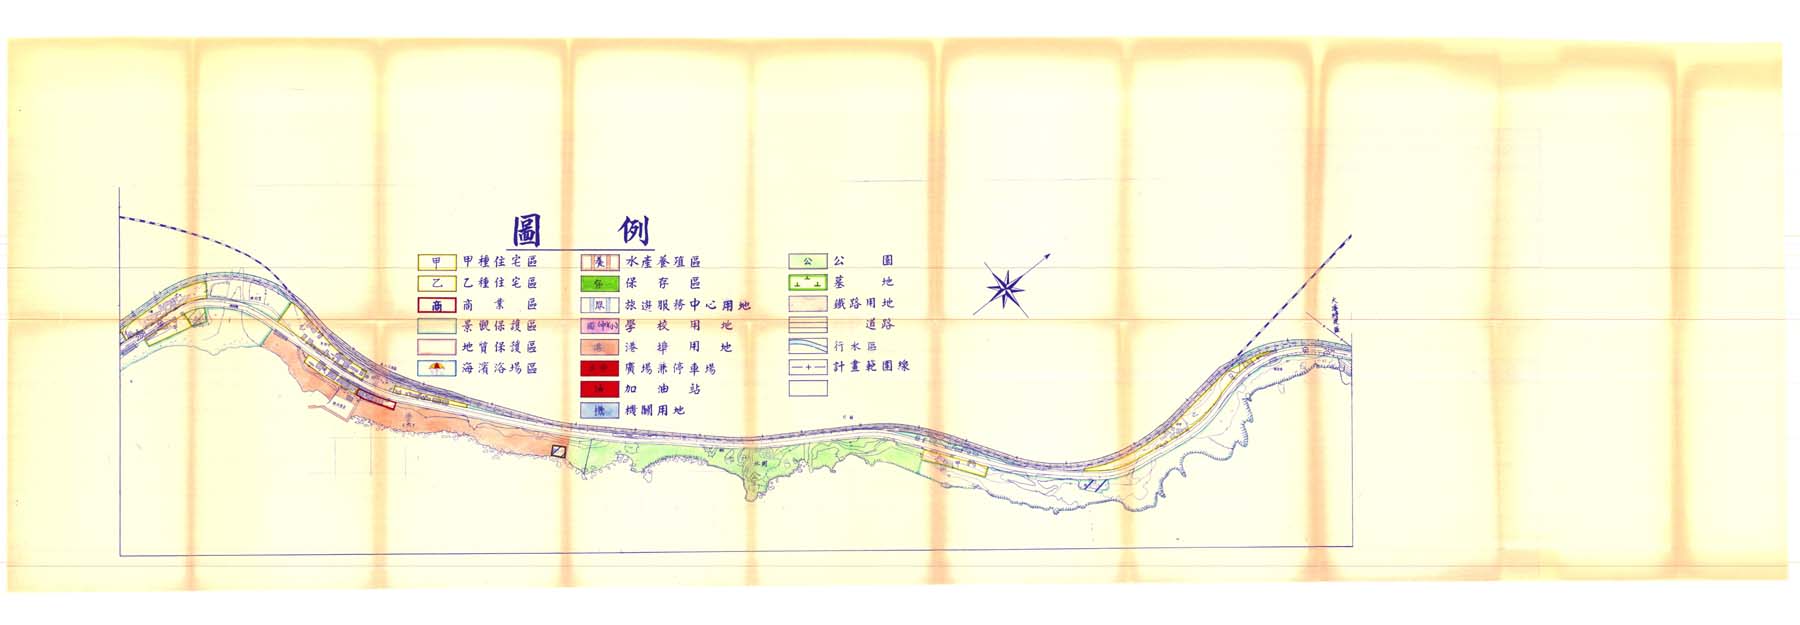 頭城濱海風景特定區計畫圖